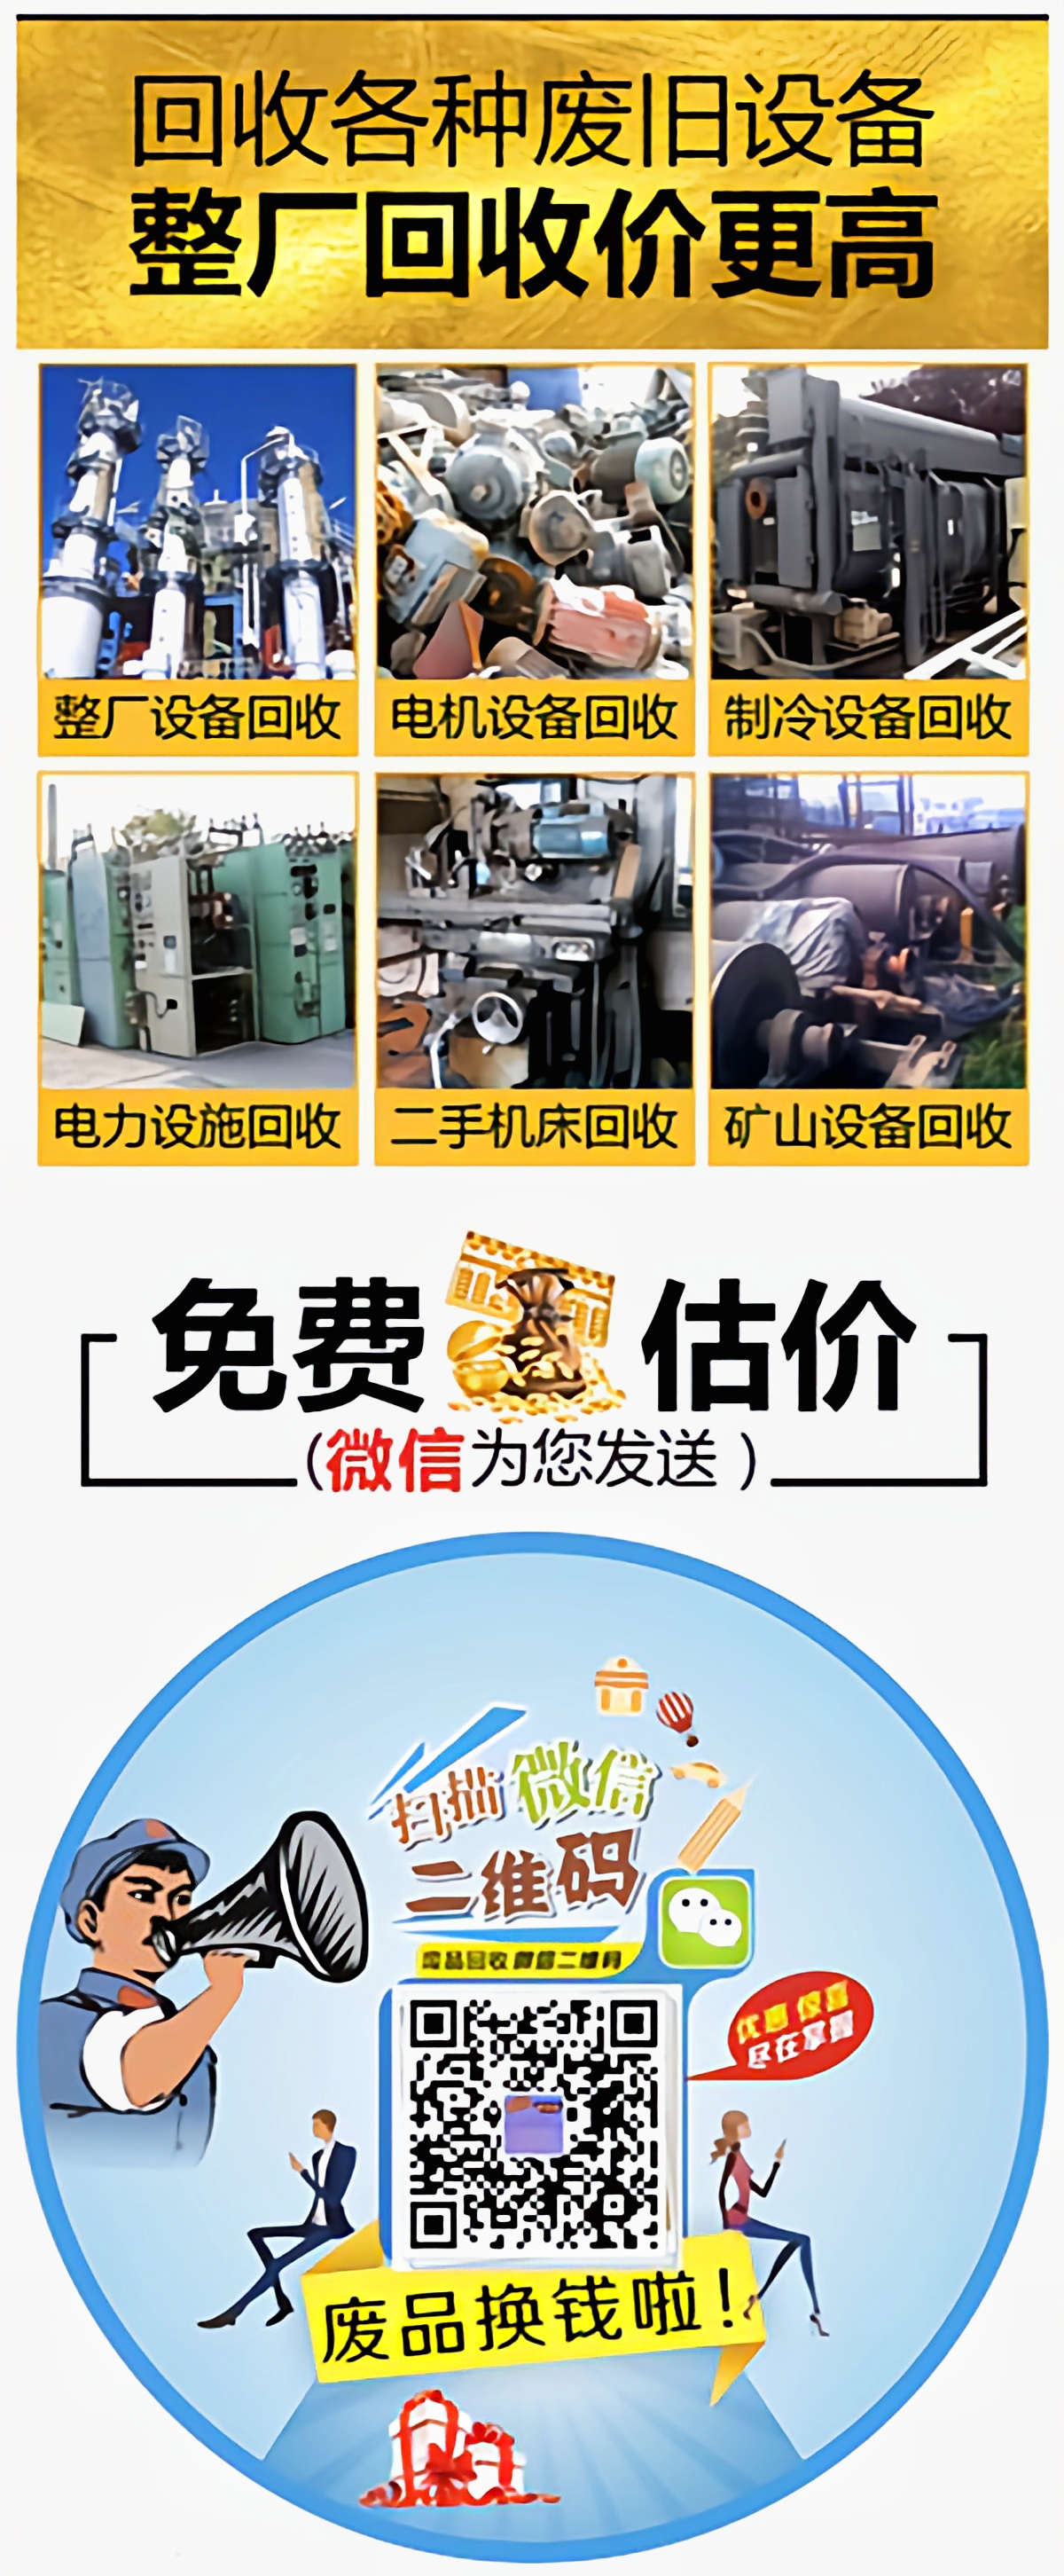 北京废品回收网回收种类、回收废品联系微信